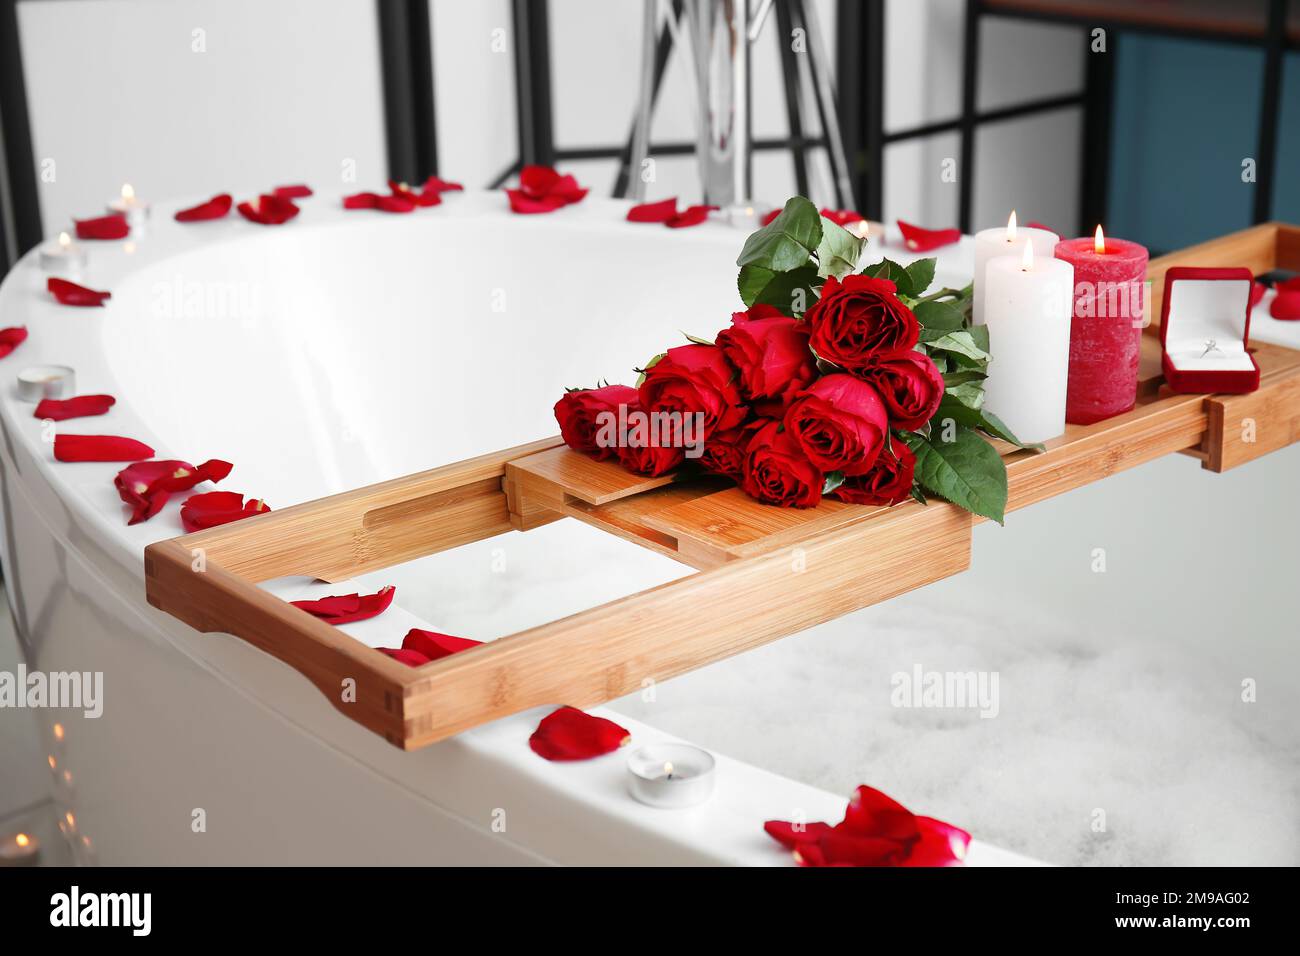 Badewanne mit Verlobungsring, Rosen und Kerzen im Badezimmer, dekoriert am  Valentinstag Stockfotografie - Alamy